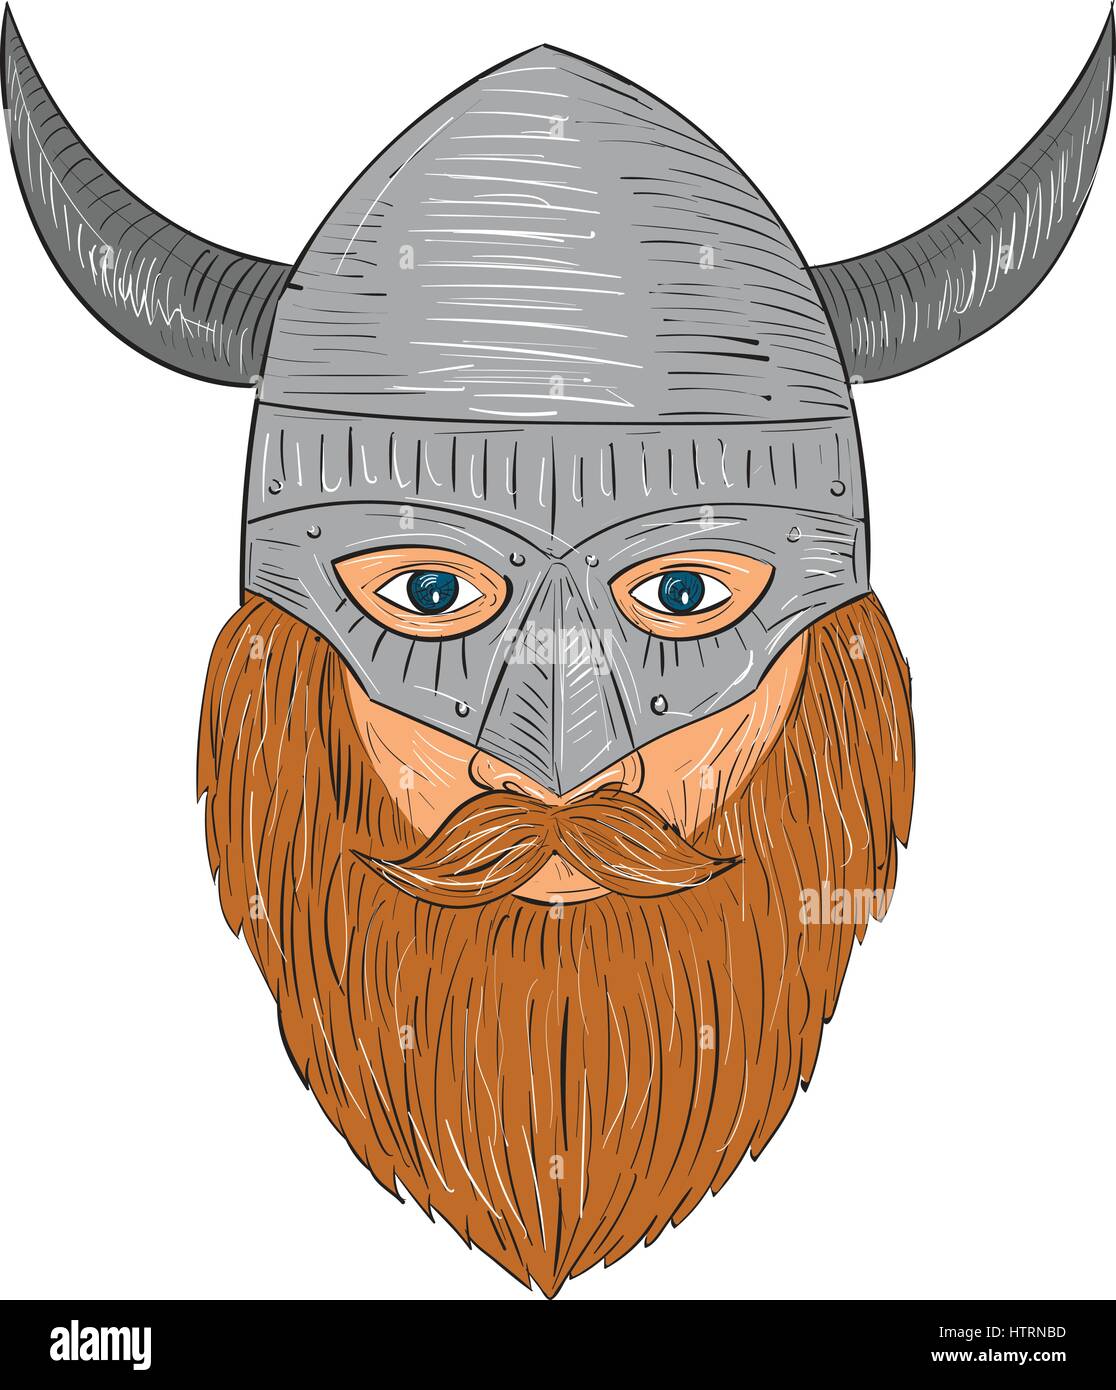 Style croquis dessin illustration d'un norseman guerrier viking raider chef barbare avec barbe portant un casque à cornes, vu de l'avant ensemble sur isoler Illustration de Vecteur